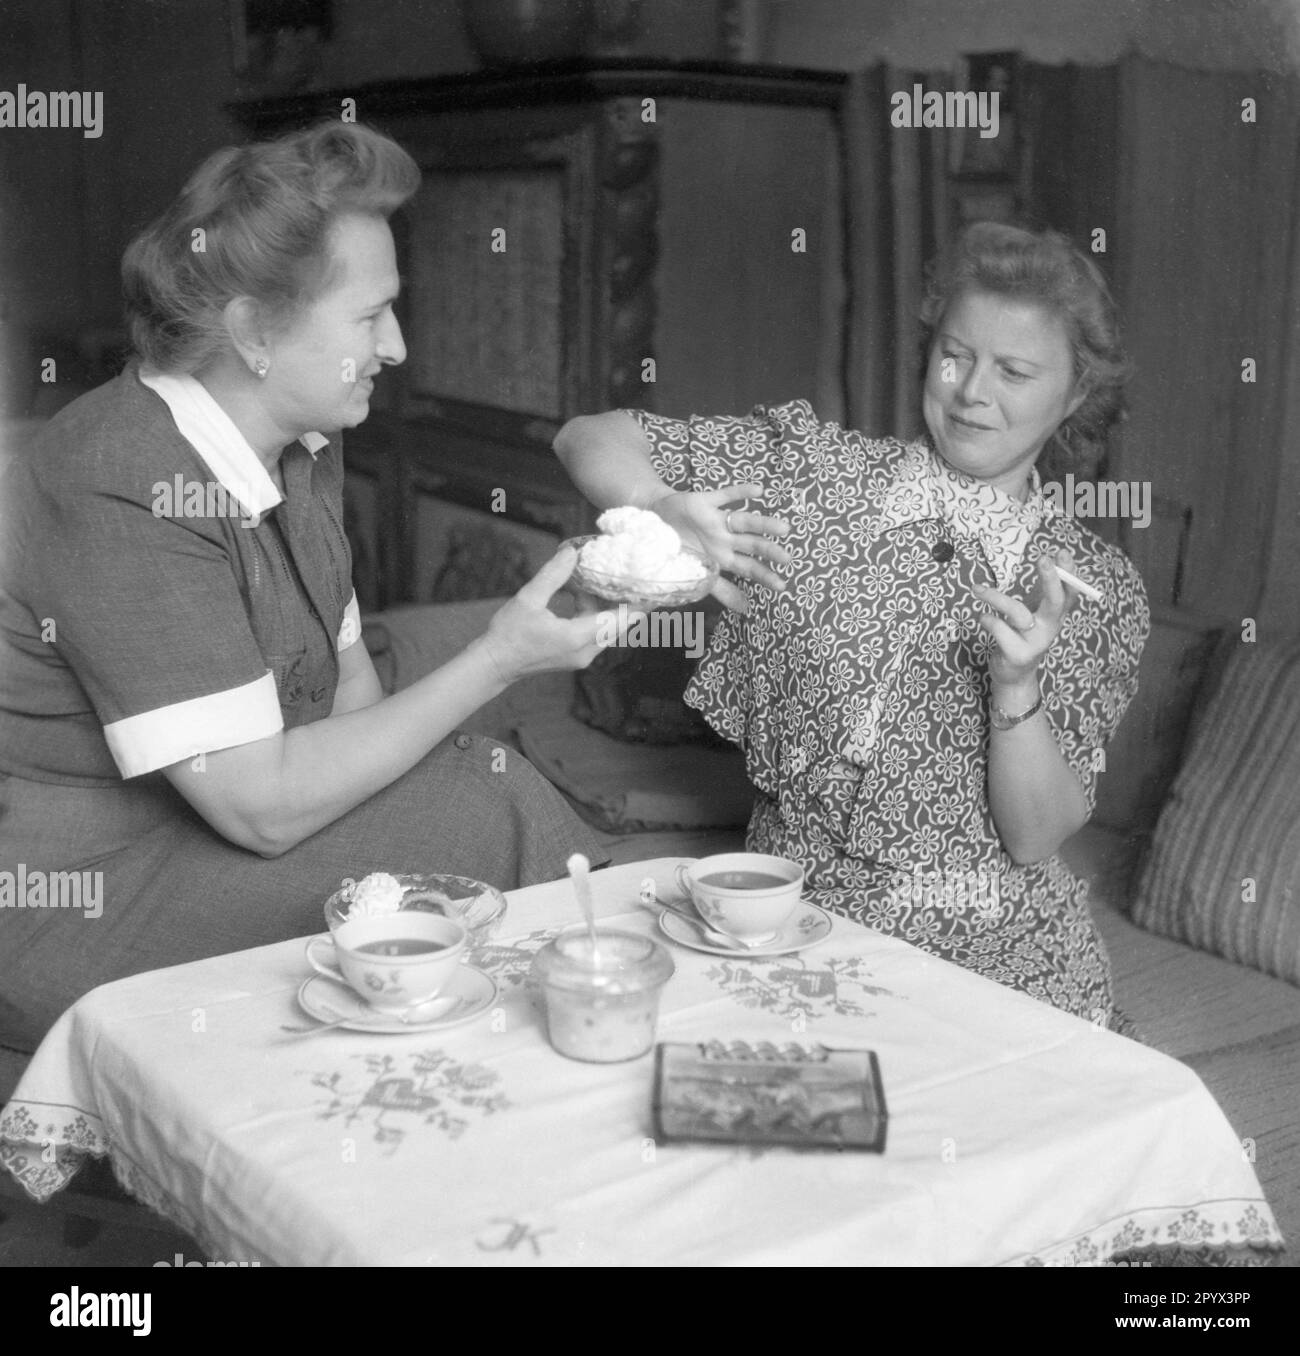 Una donna offre ad un'altra donna crema al caffè. Si rifiuta con una sigaretta in mano. Foto Stock